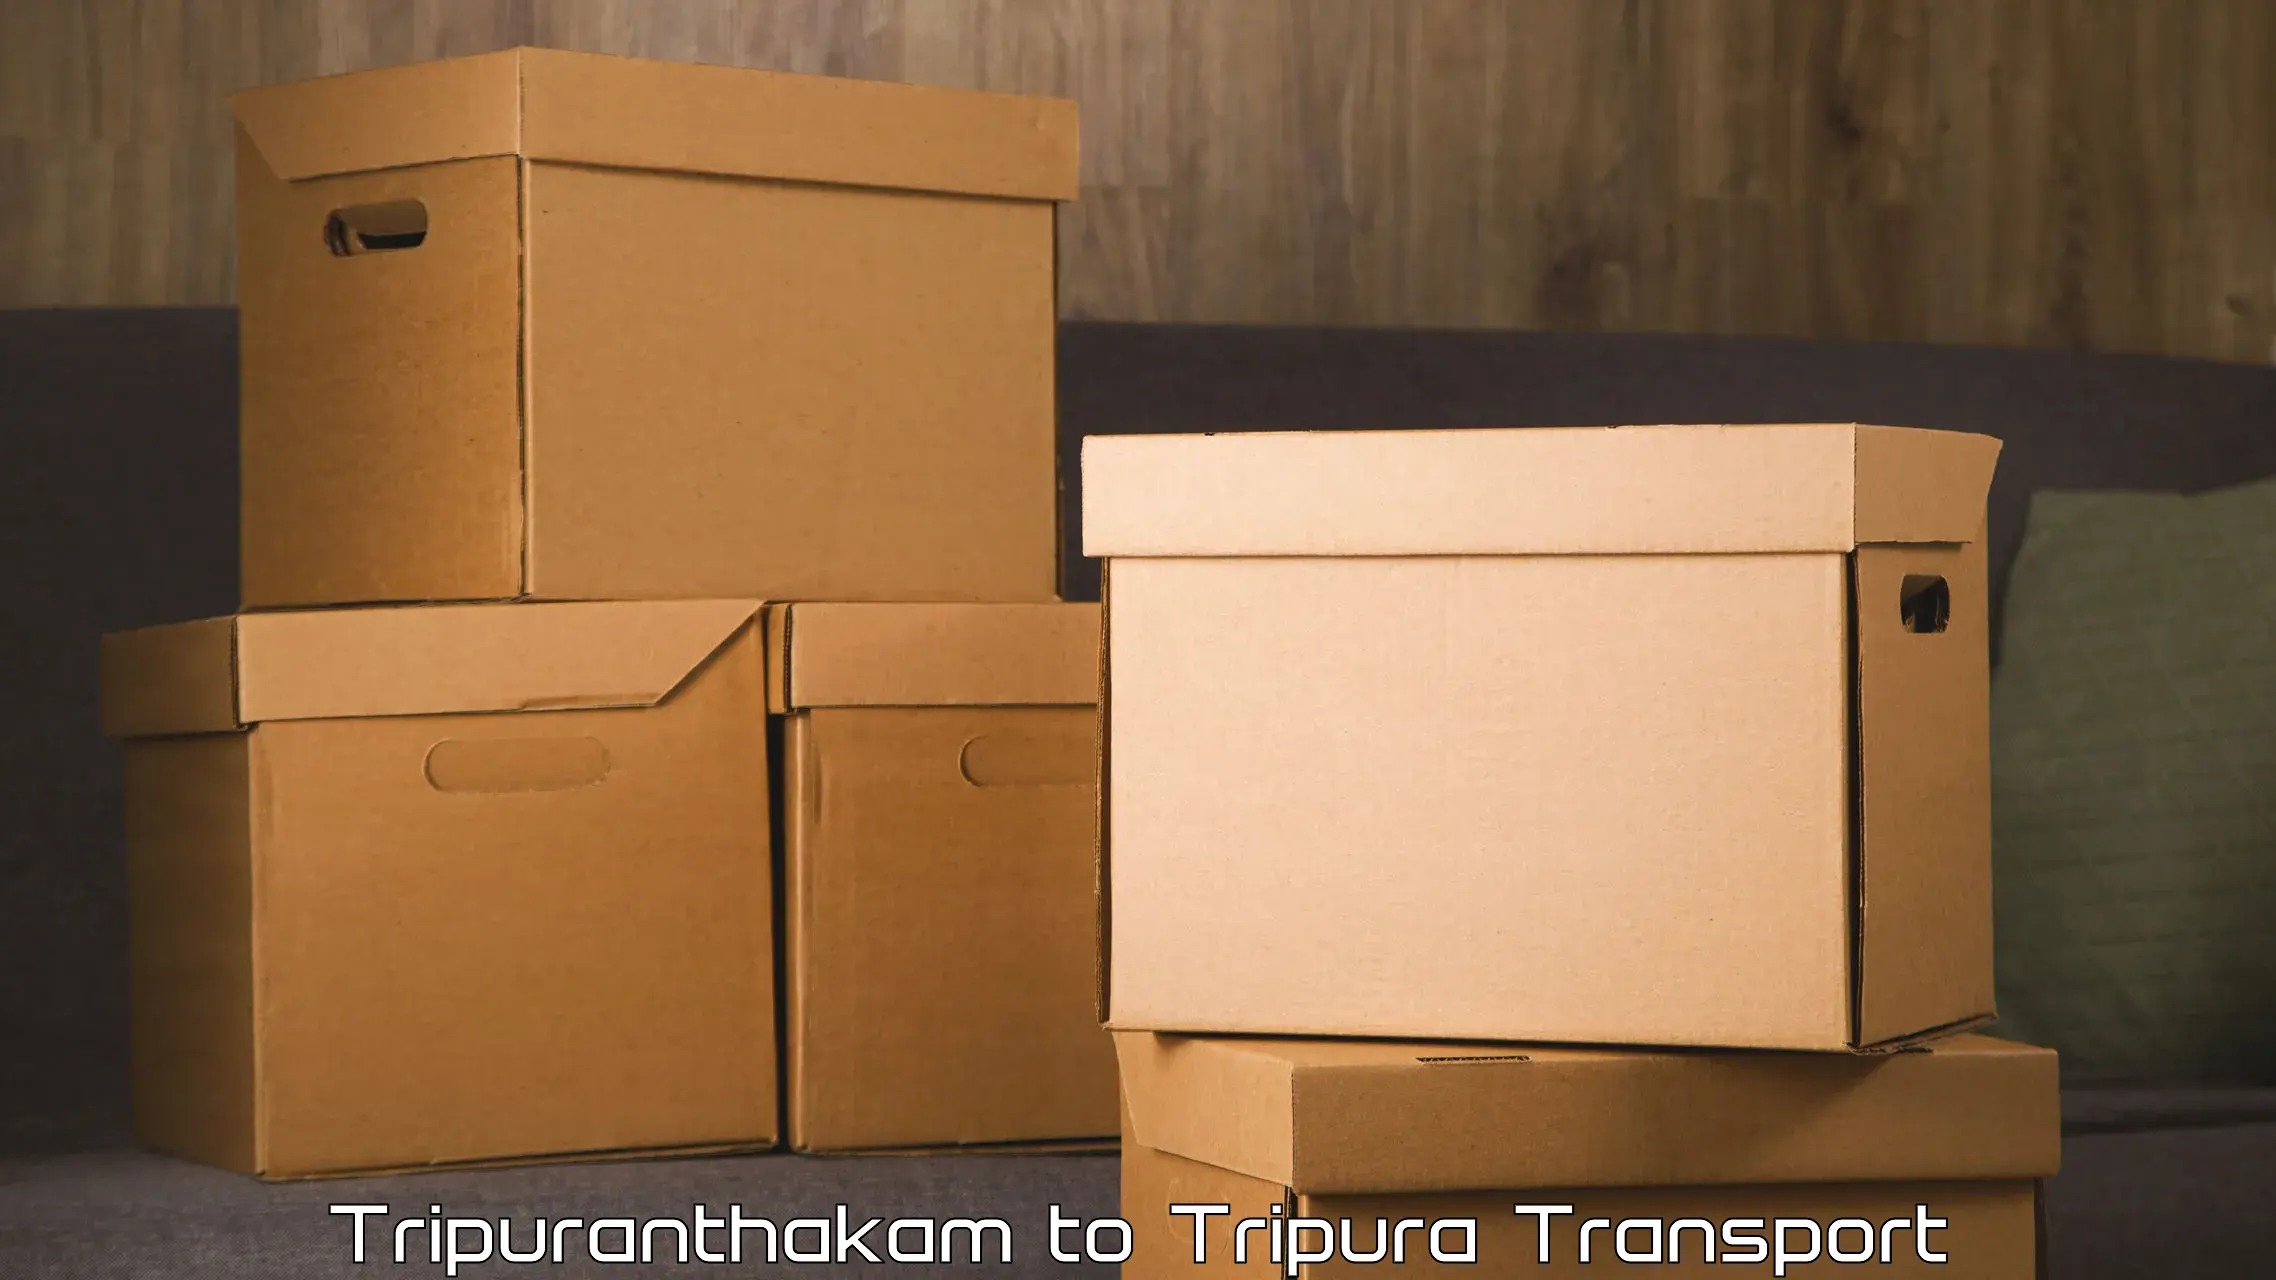 Road transport online services Tripuranthakam to Manughat